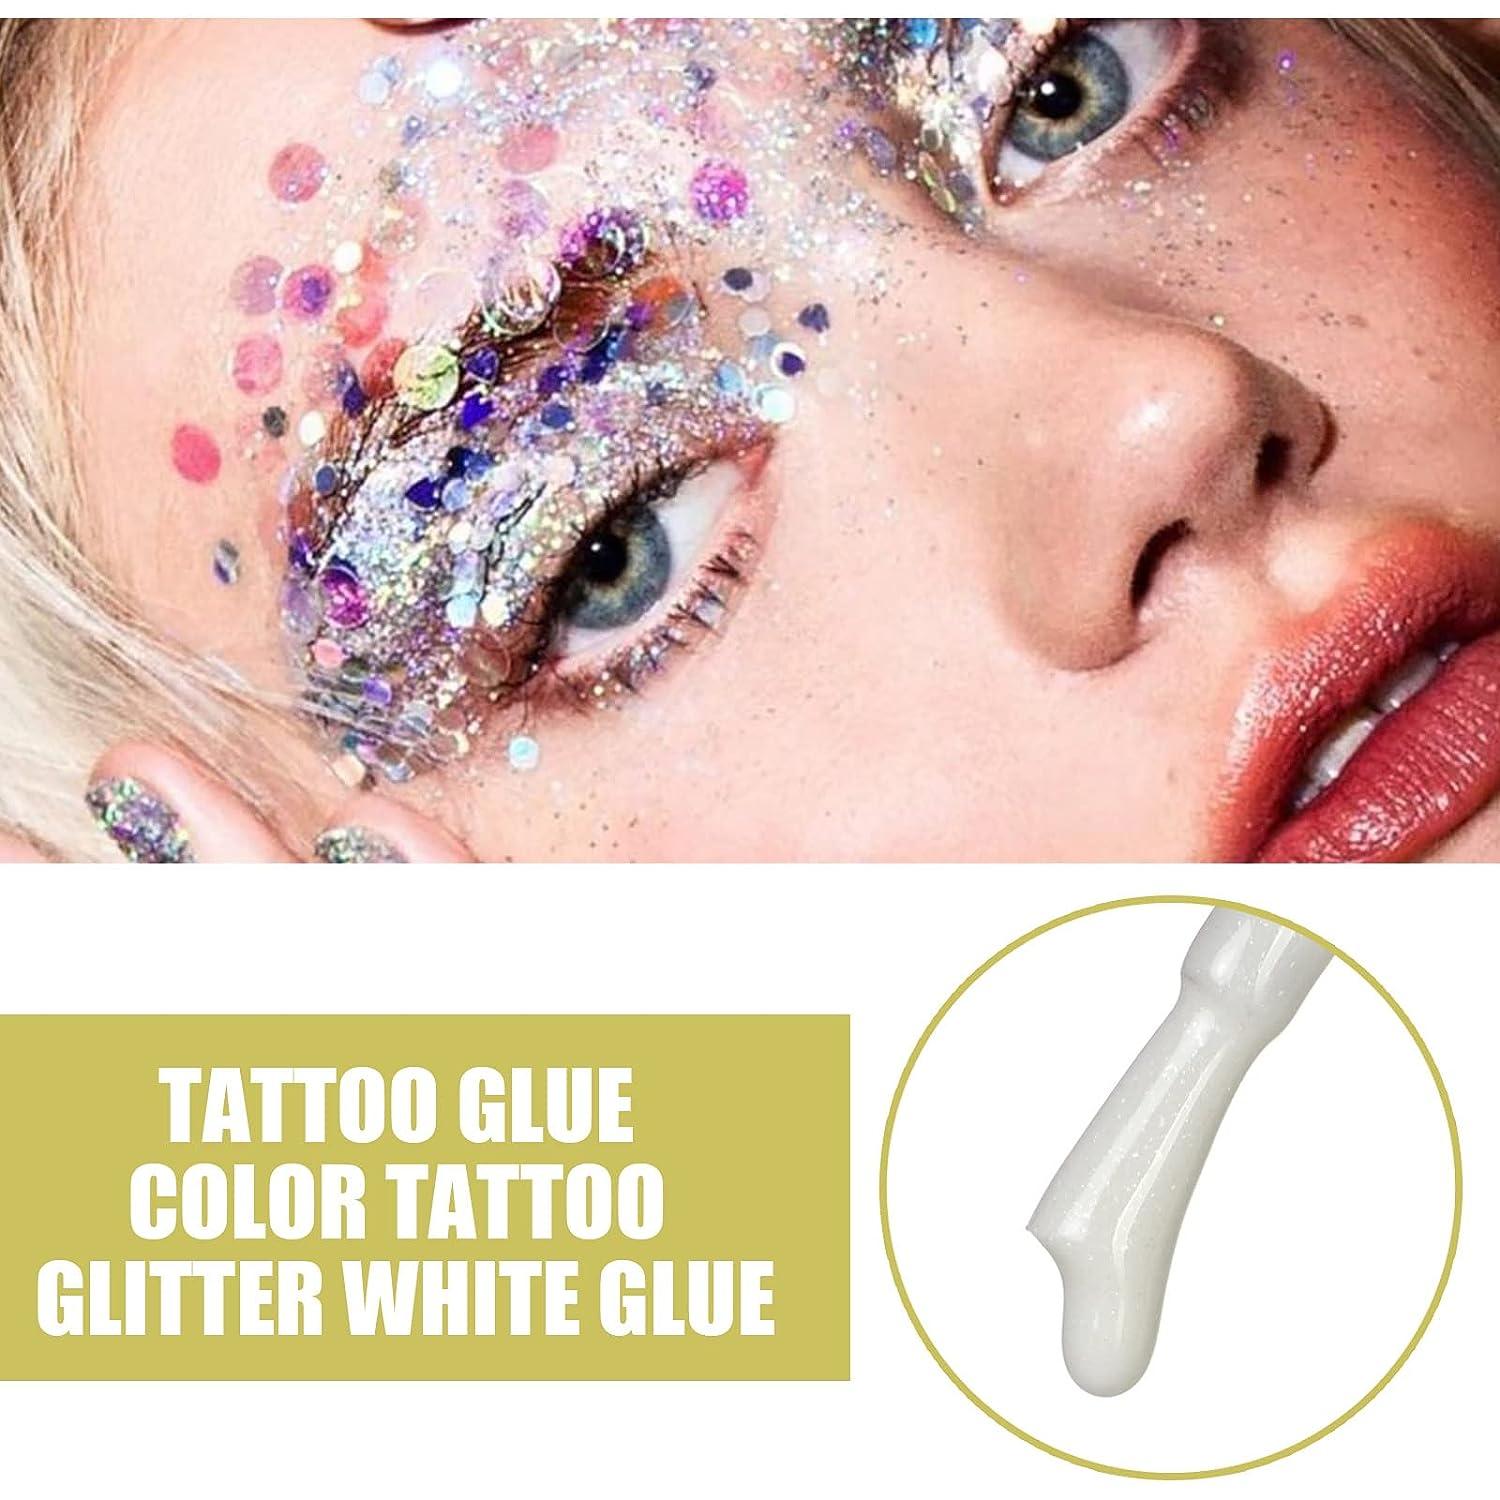 3 PCS Skin Glue for Glitter Tattoos 8ml Glitter Glue Brush Bottle